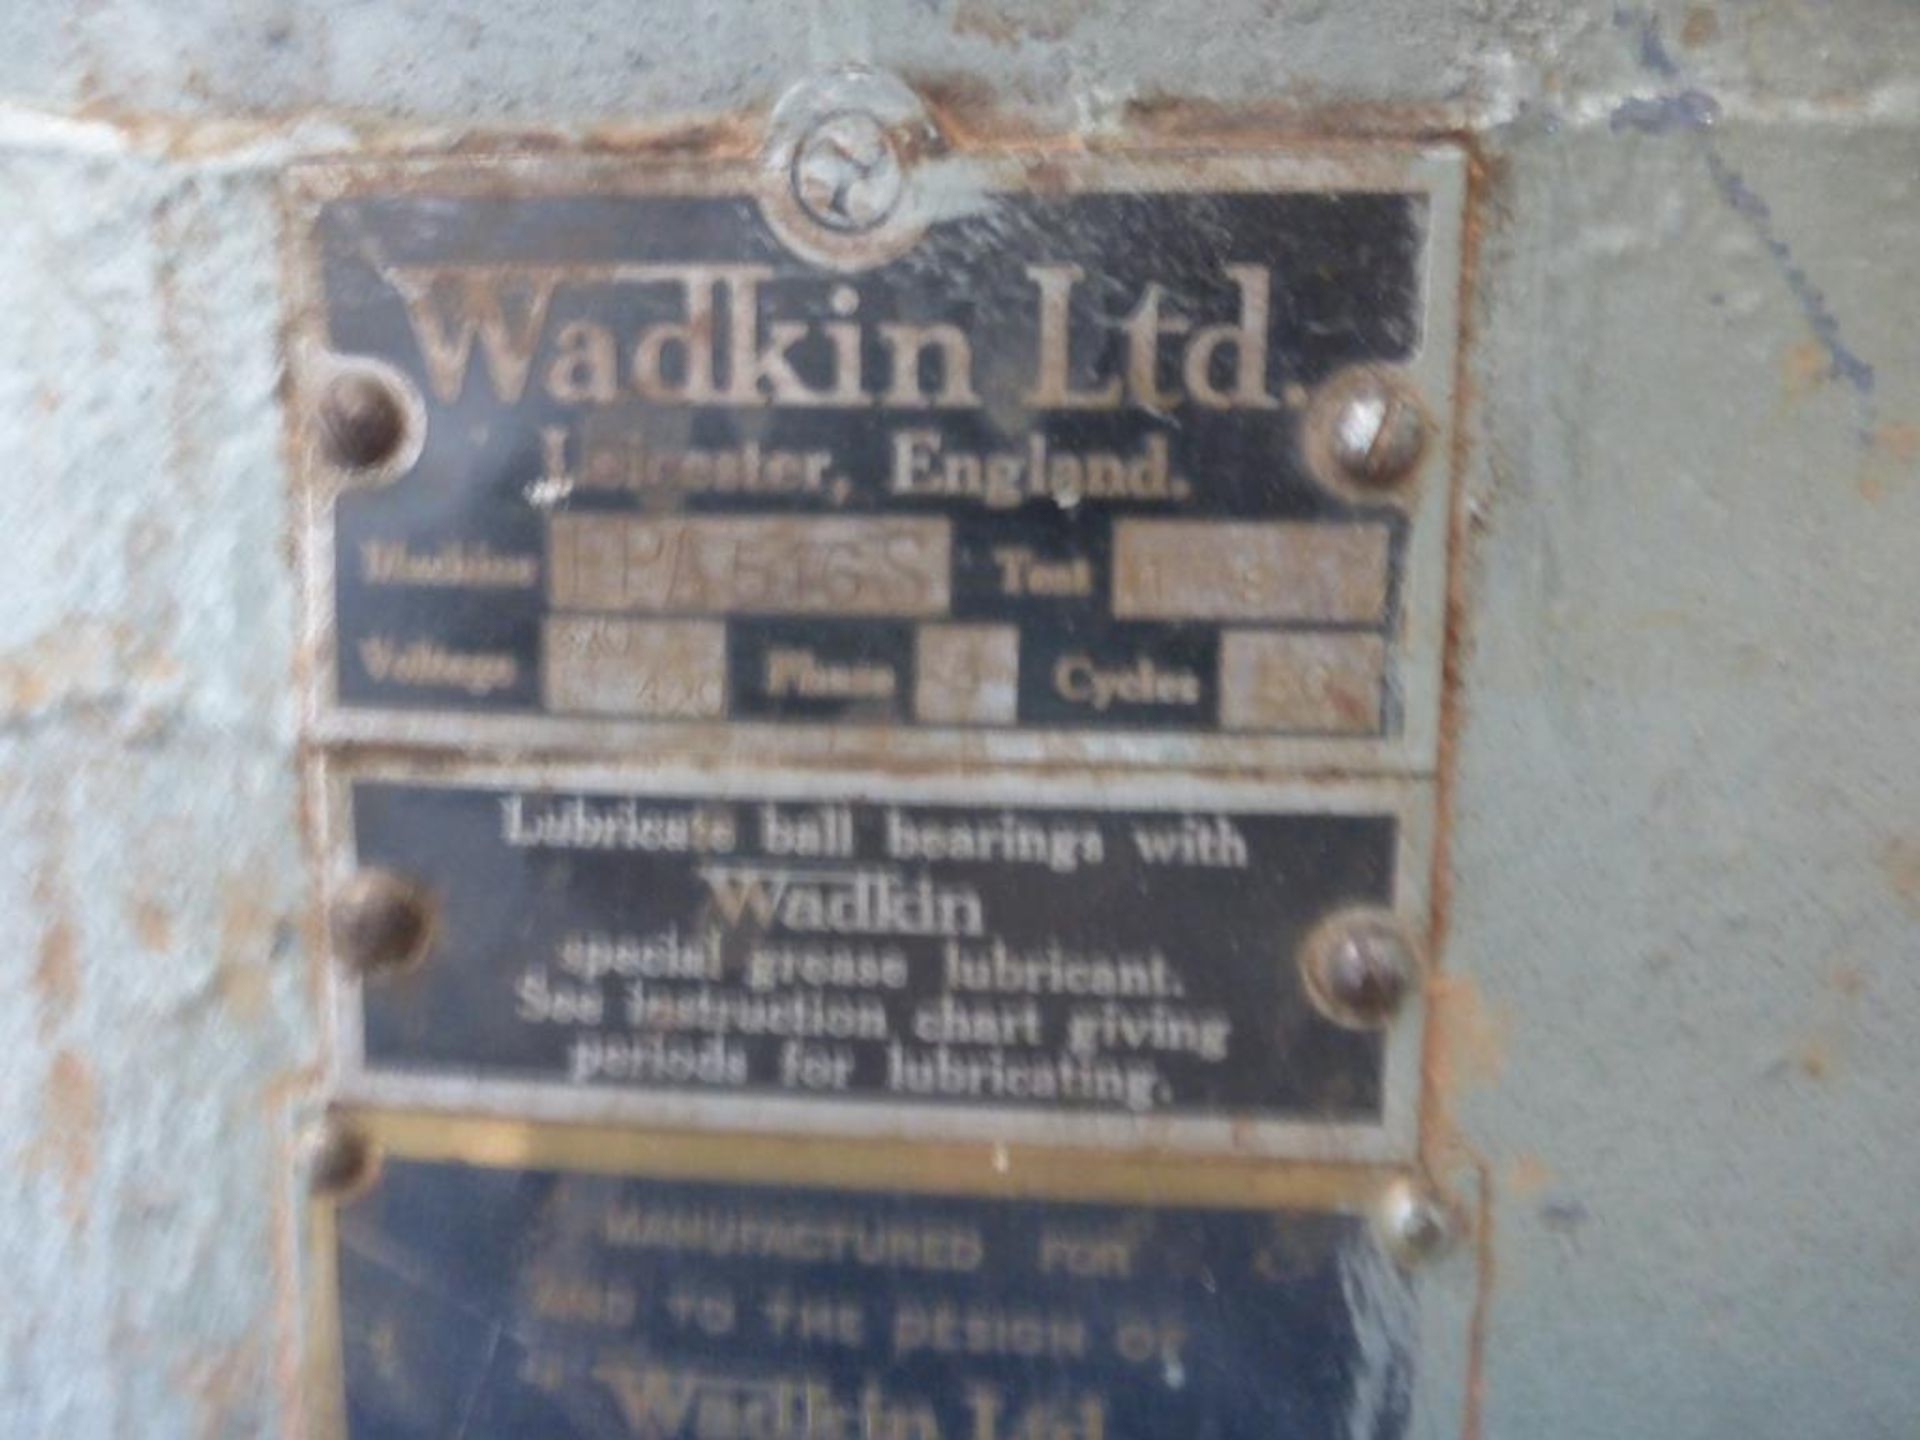 Wadkin EPA 5165 Spindle Moulder - Image 7 of 8